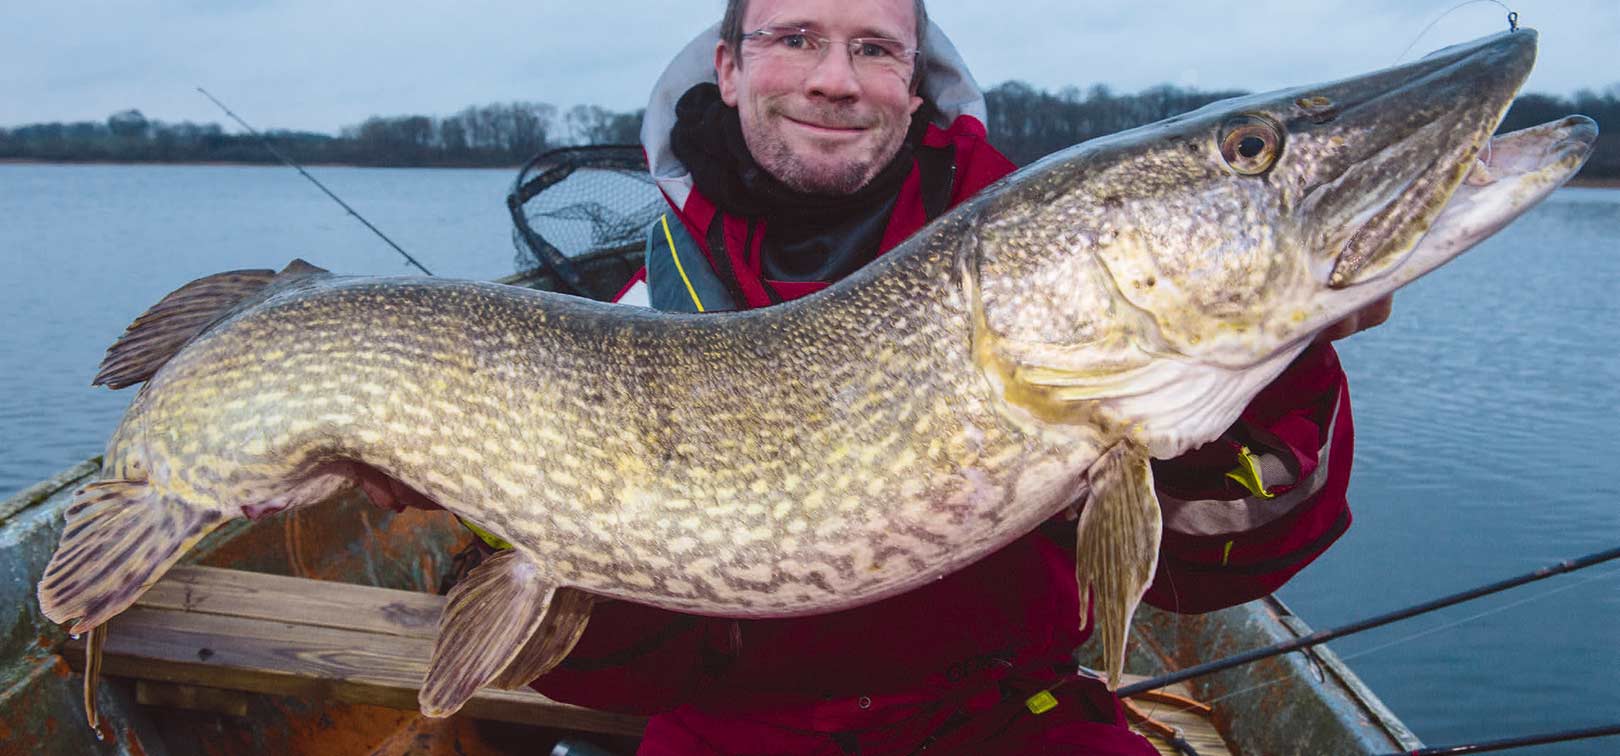 Jens Bursell med en rigtig god fisk, der tog en 350 grams skalle fisket under flåd 8 meter nede på 10 meter vand.